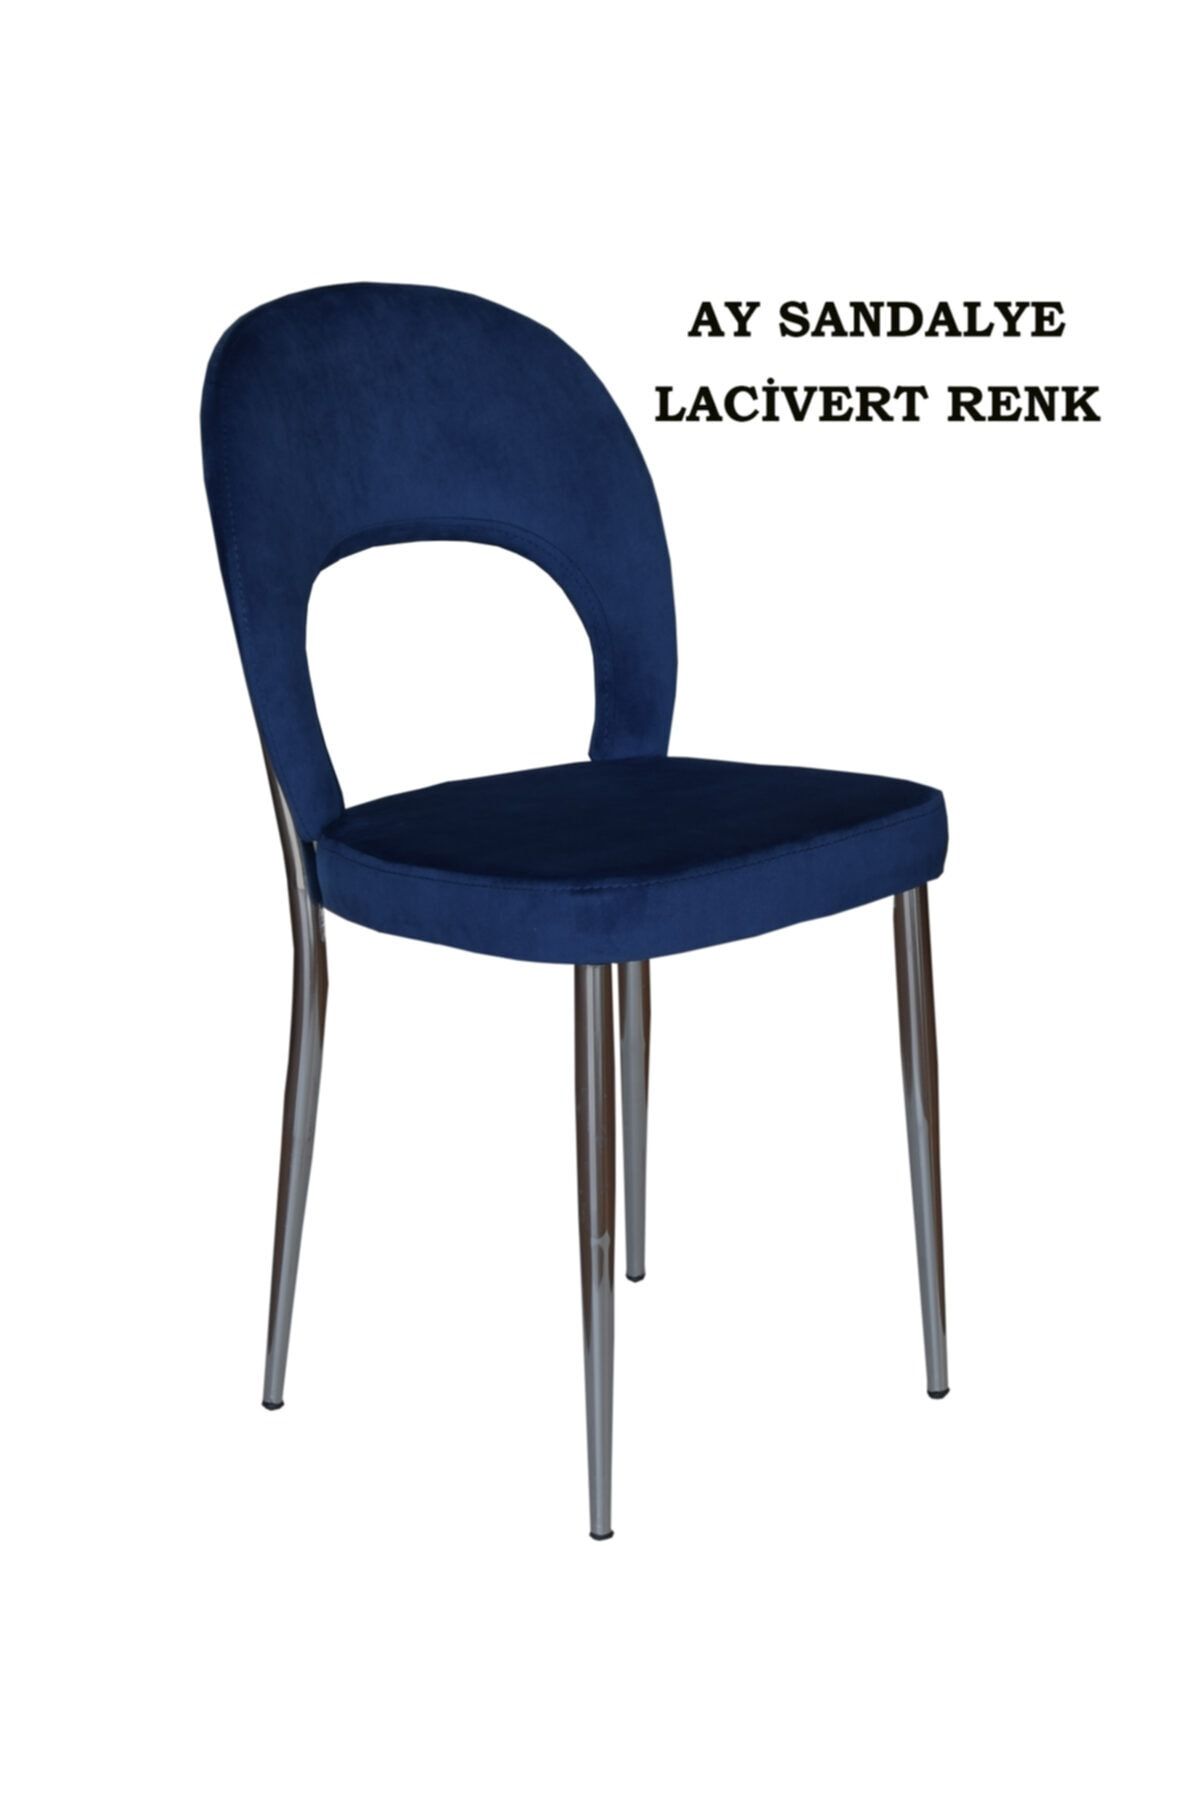 Ankhira Ay Sandalye, Mutfak Sandalyesi, Silinebilir Lacivert Renk Kumaş, Krom Ayaklı